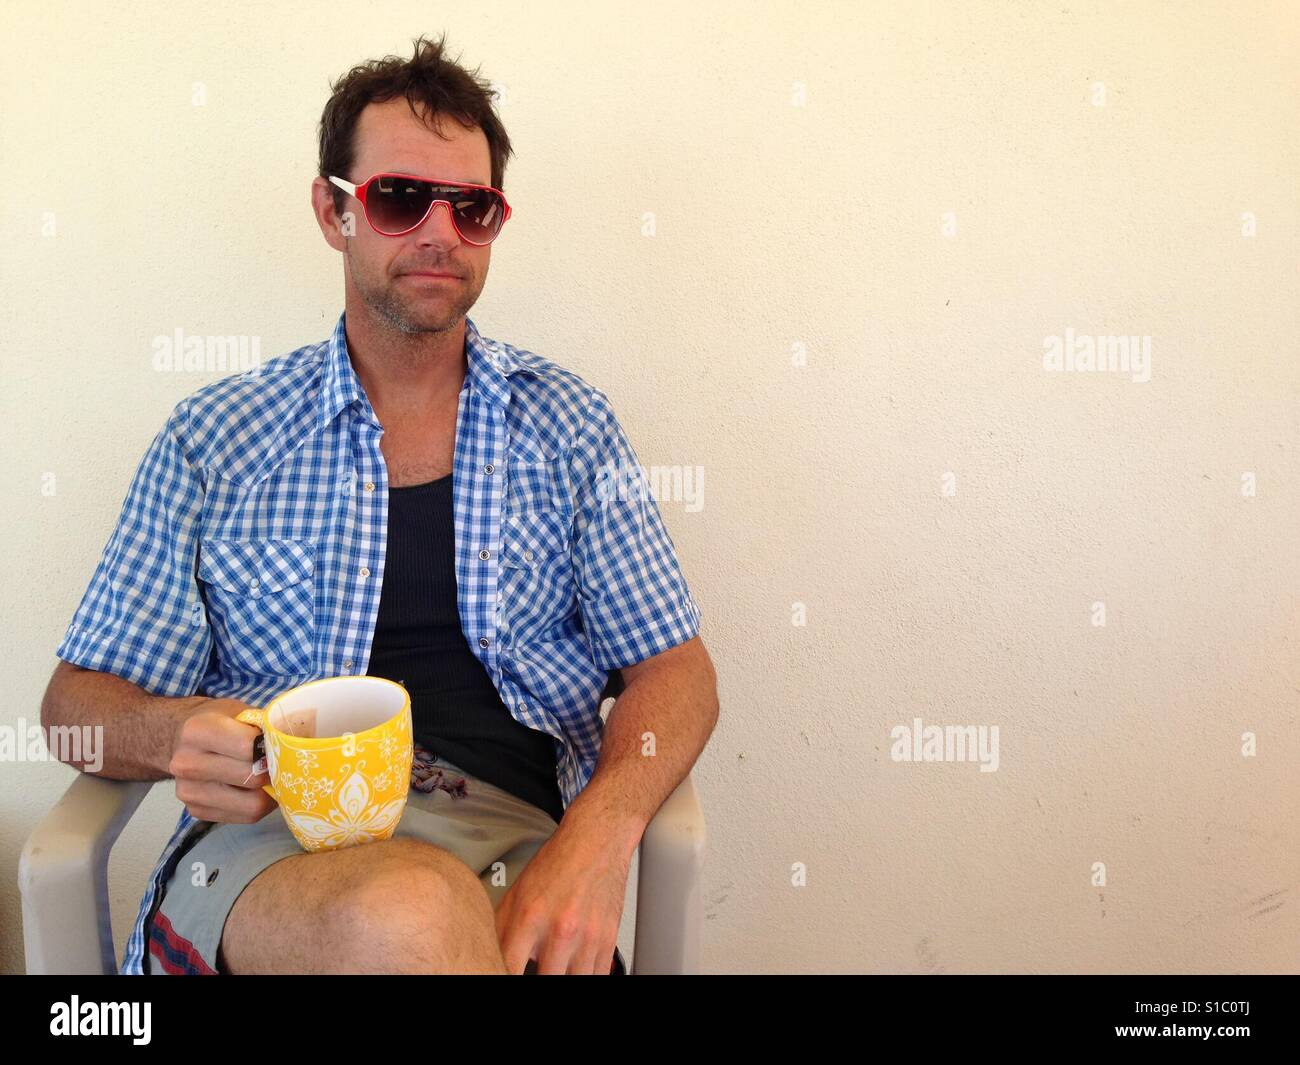 Un homme est assis sur une chaise avec un mug jaune reposant sur ses genoux. Il est en train de regarder la caméra mais portant des lunettes de soleil. Ses cheveux sont ébouriffés et il n'a pas rasé. Banque D'Images